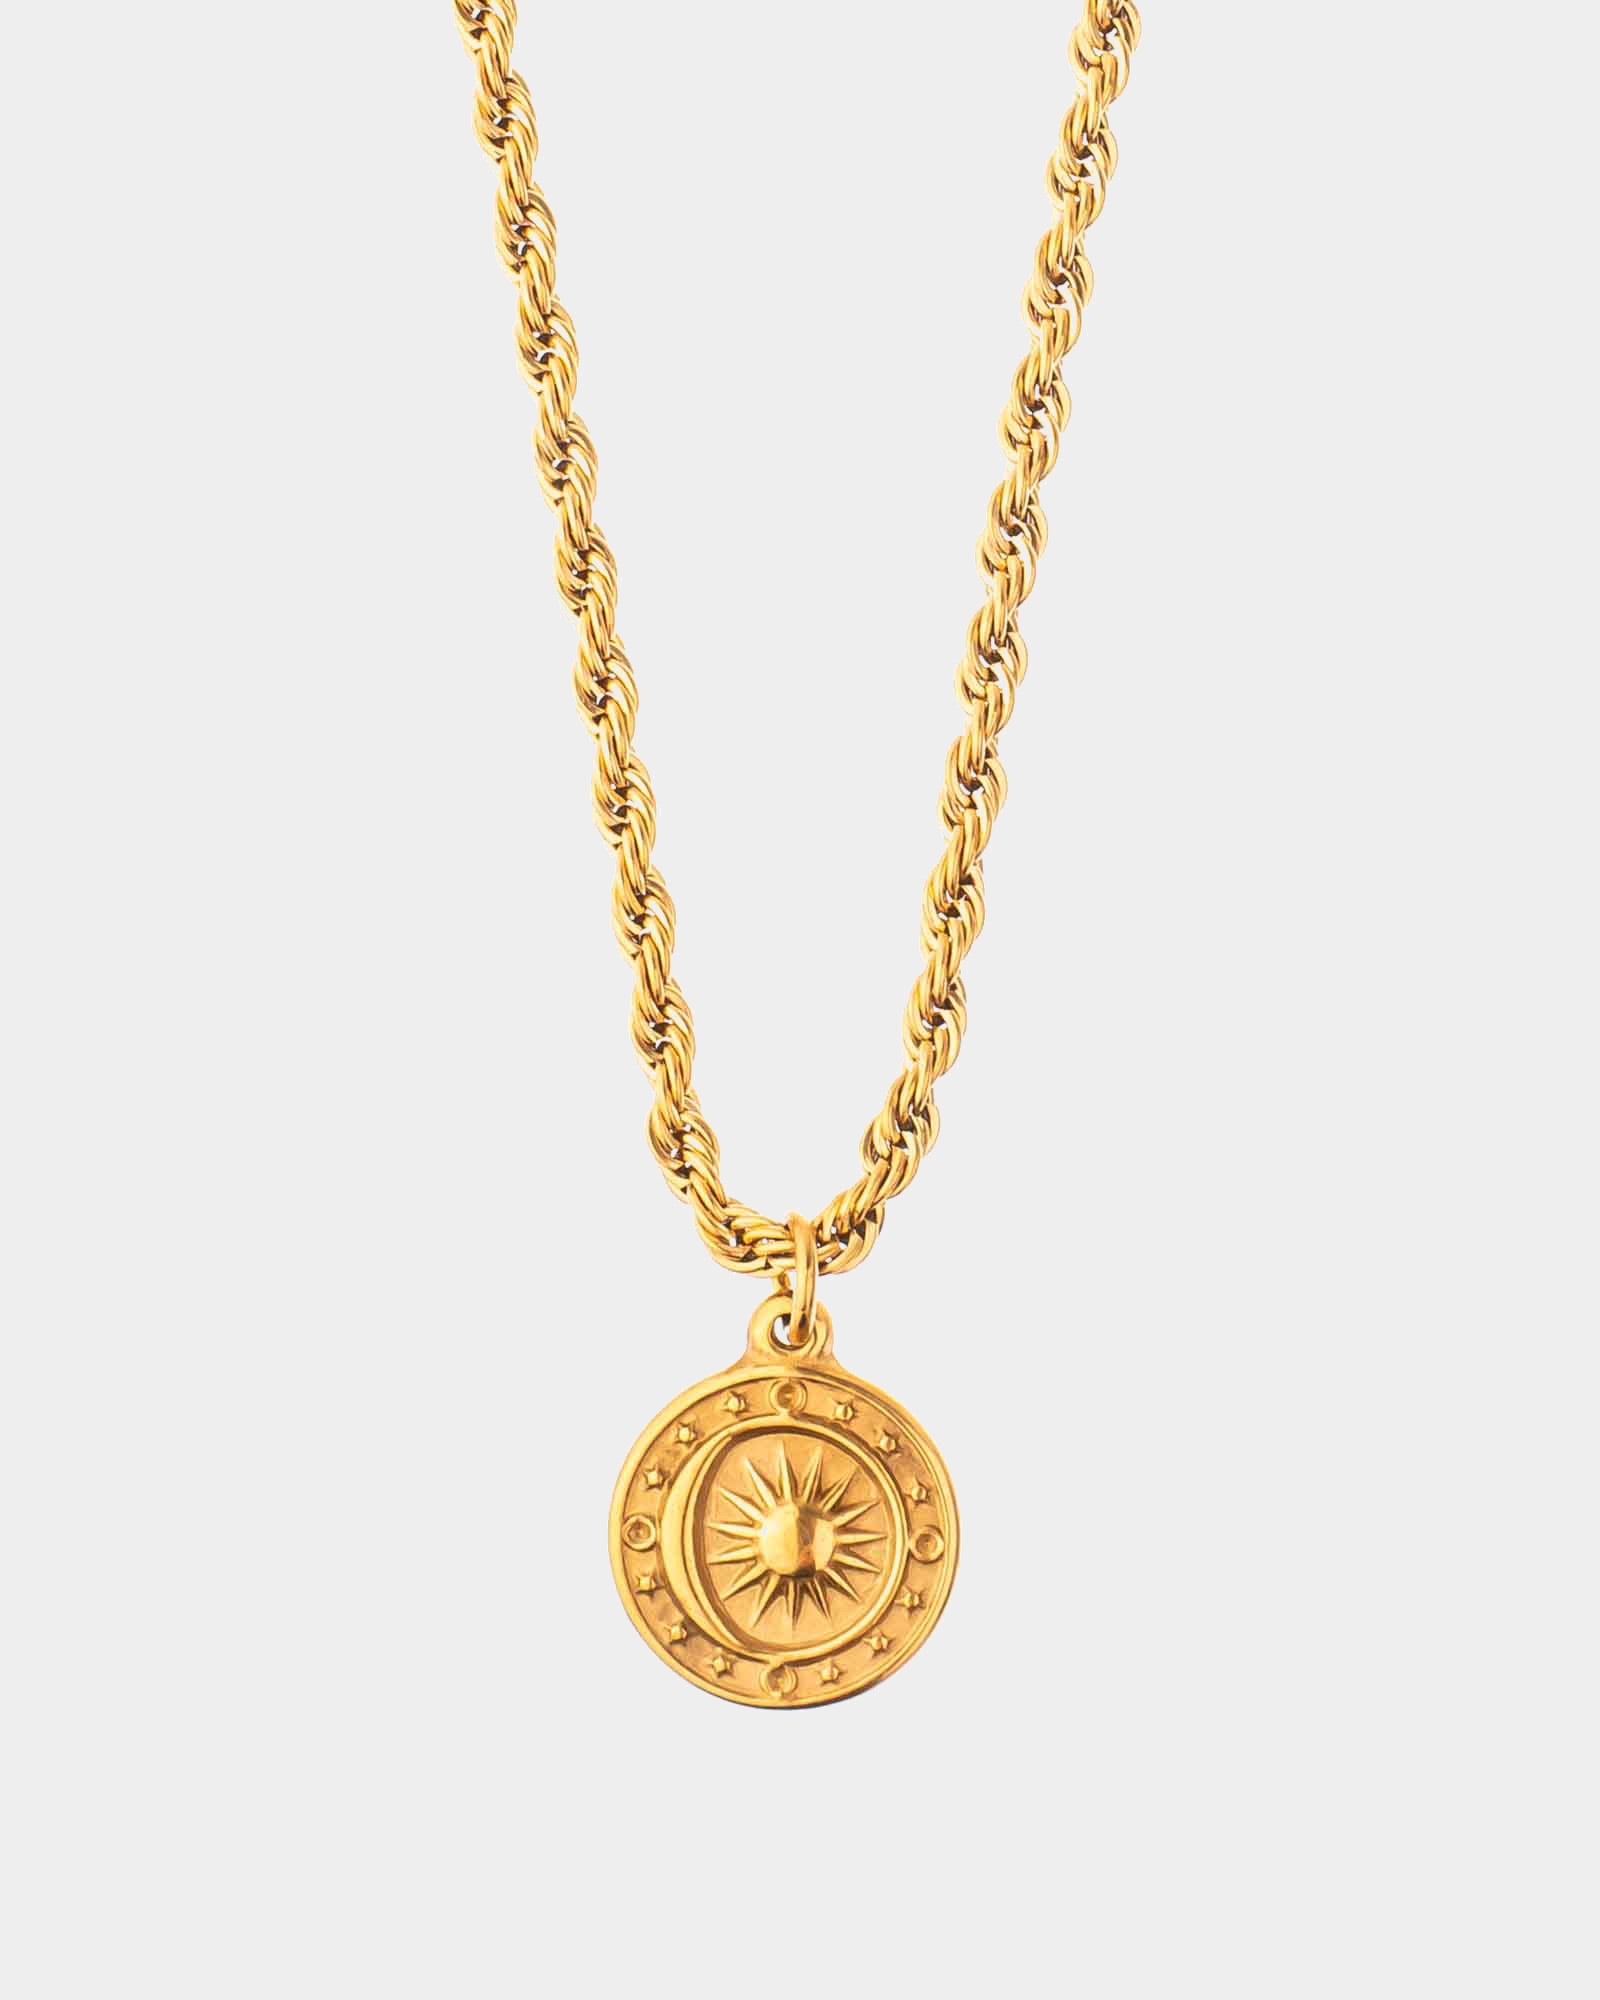 Sizigia Raso - Golden Steel Necklace Sizigia Raso - Online Unissex Jewelry - Dicci